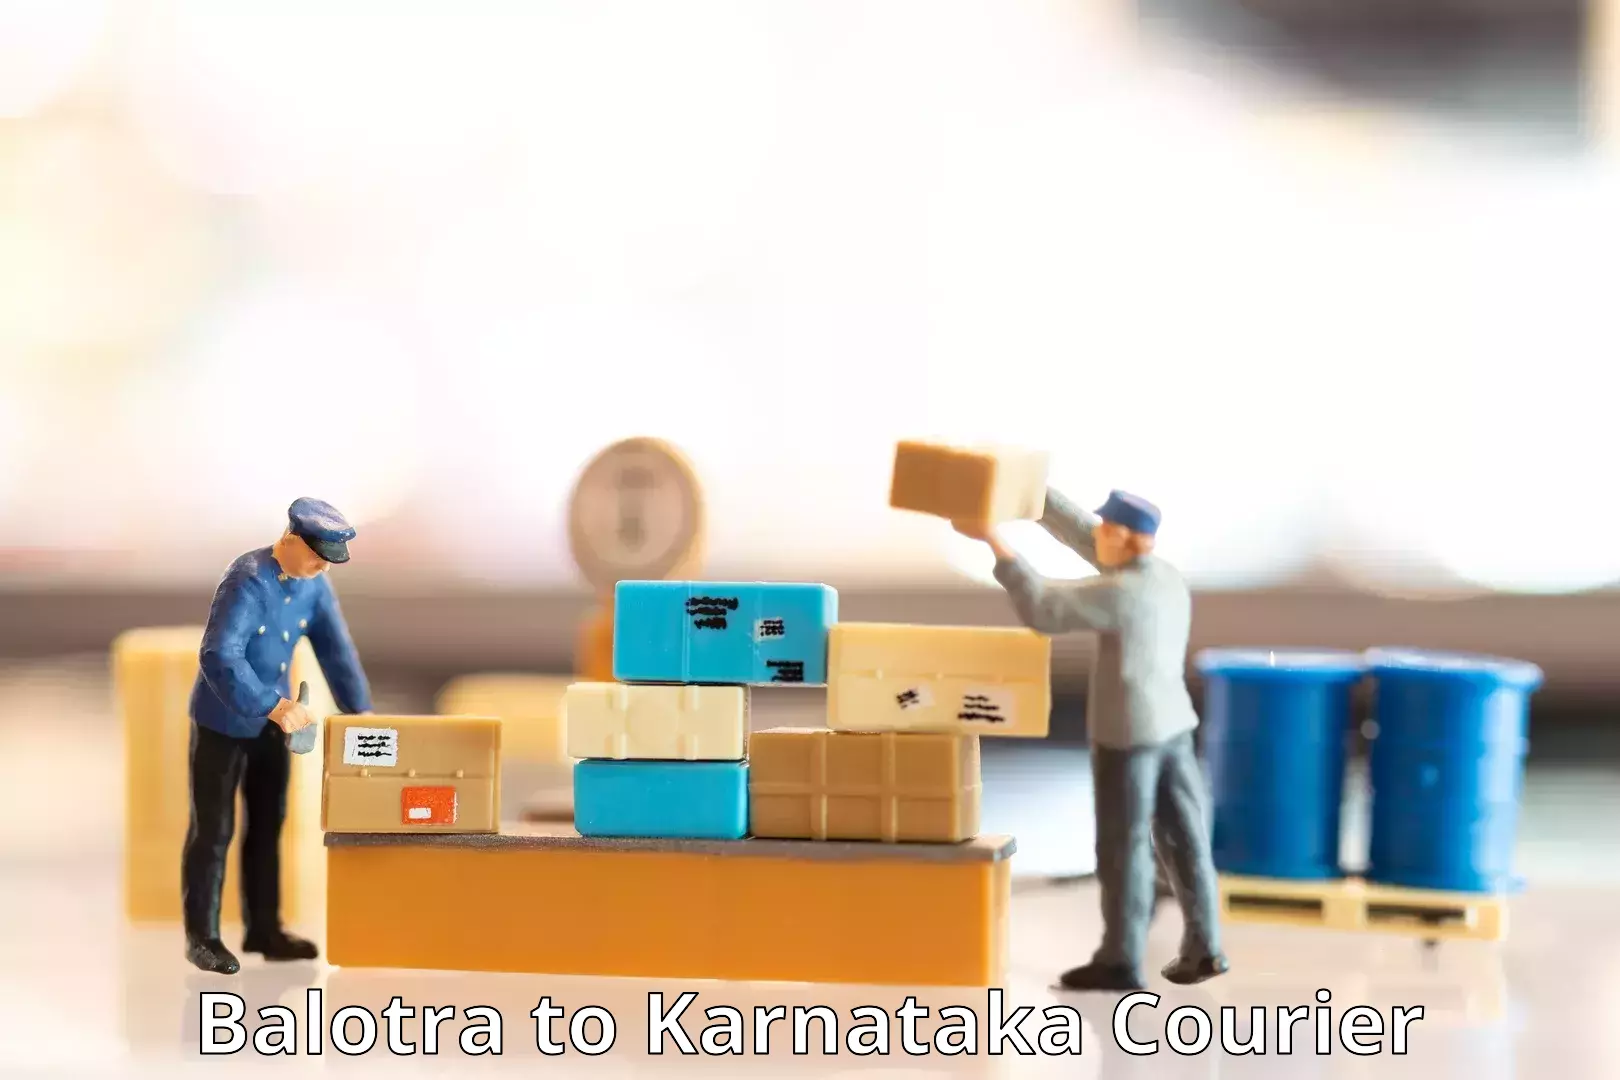 Shipping and handling Balotra to Karnataka